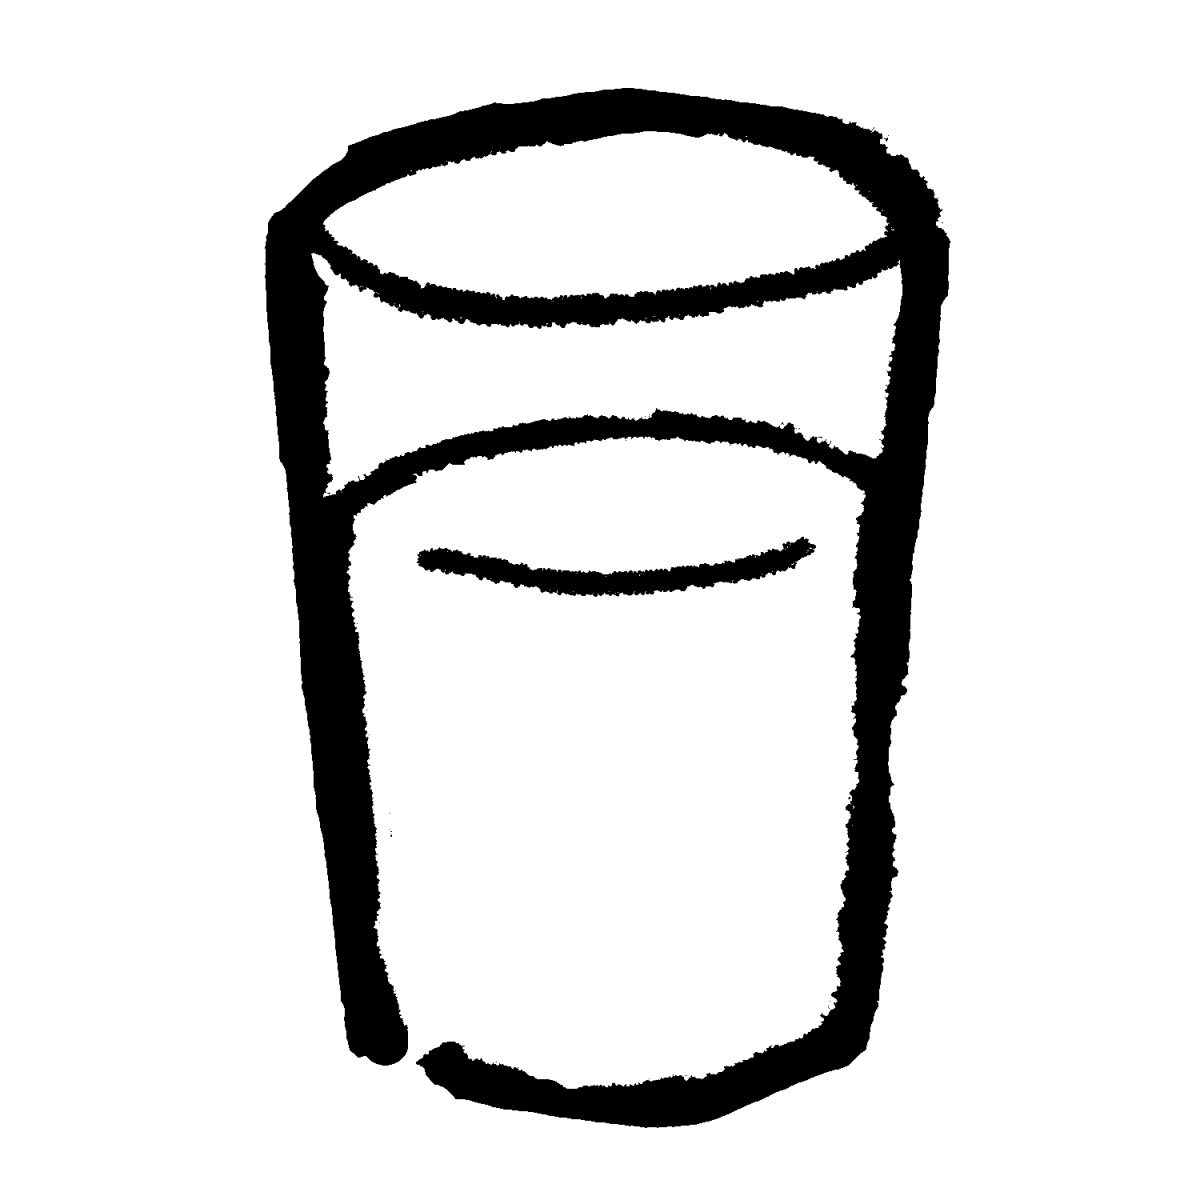 水の入ったコップのイラスト / Cup of water Illustration